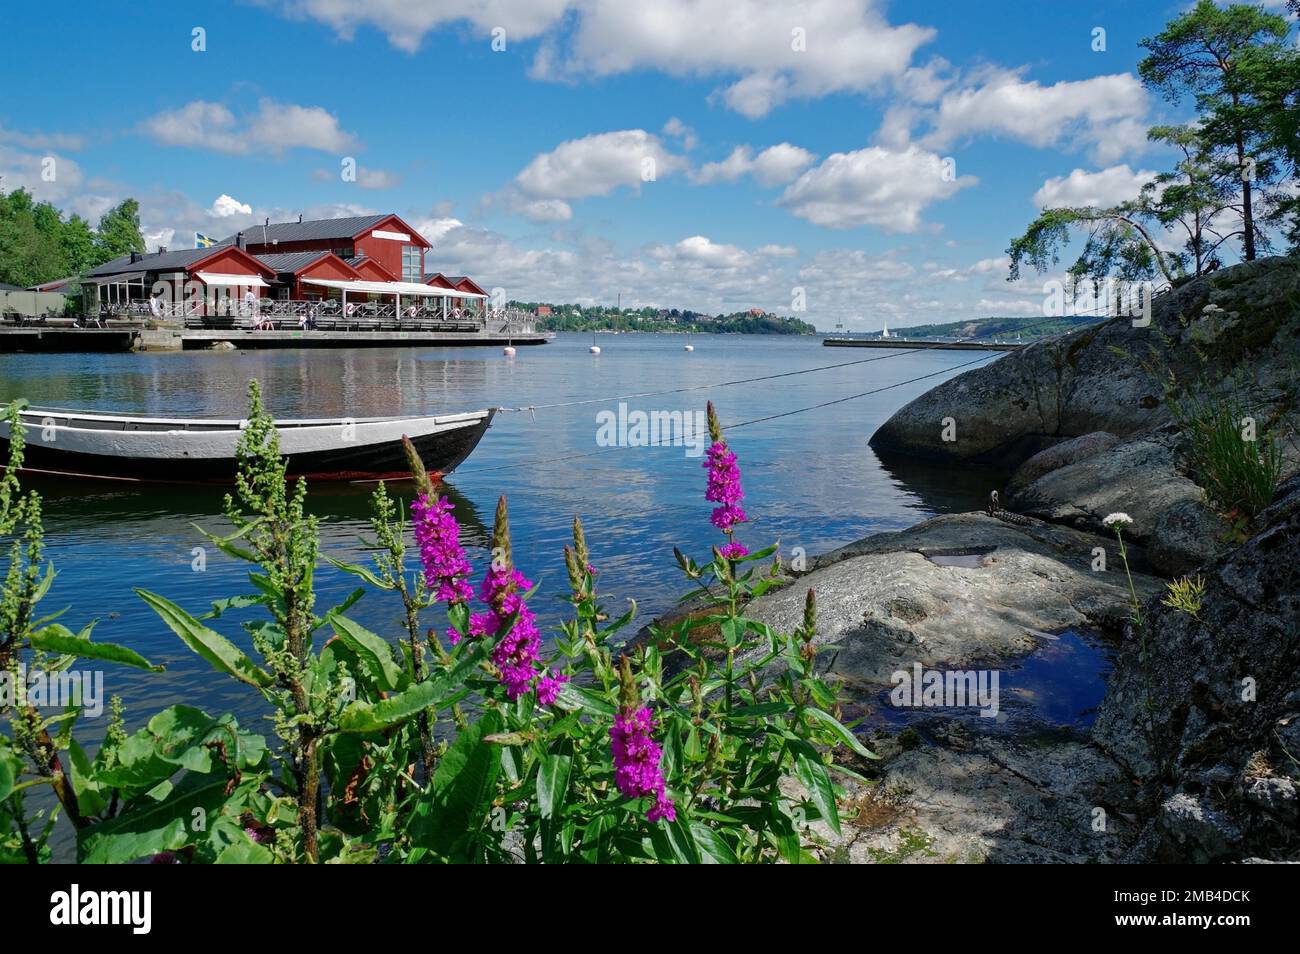 Piccola isola, barche, costa rocciosa e fiori, idil, destinazione, Fjaedarholma, Stoccolma, Svezia Foto Stock